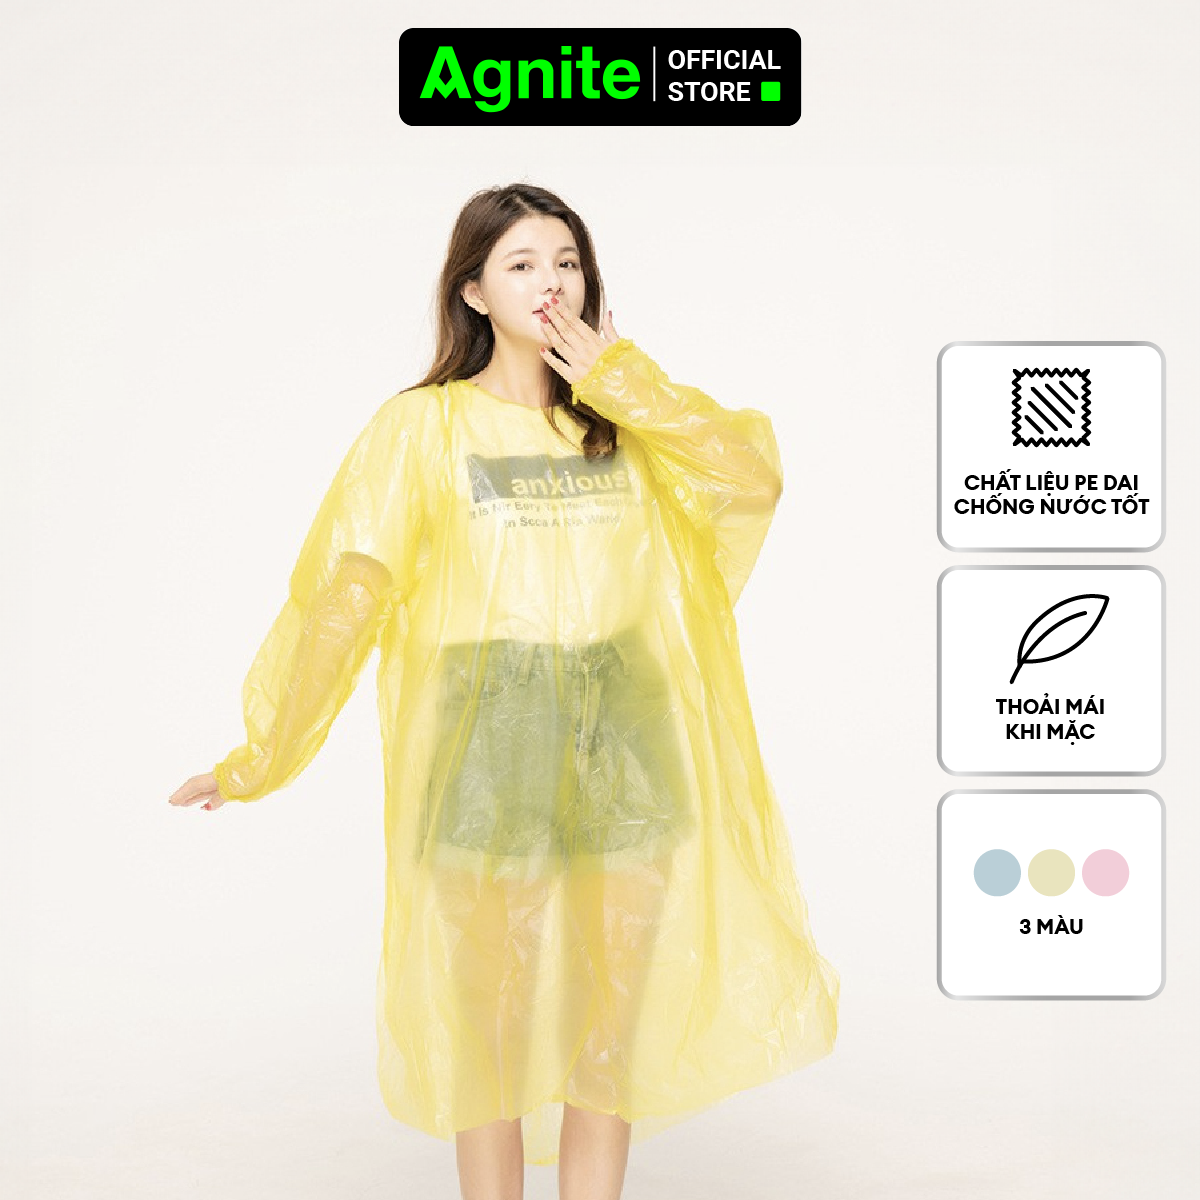 Áo mưa thiết kế thời trang Agnite - Chất liệu PE siêu dai